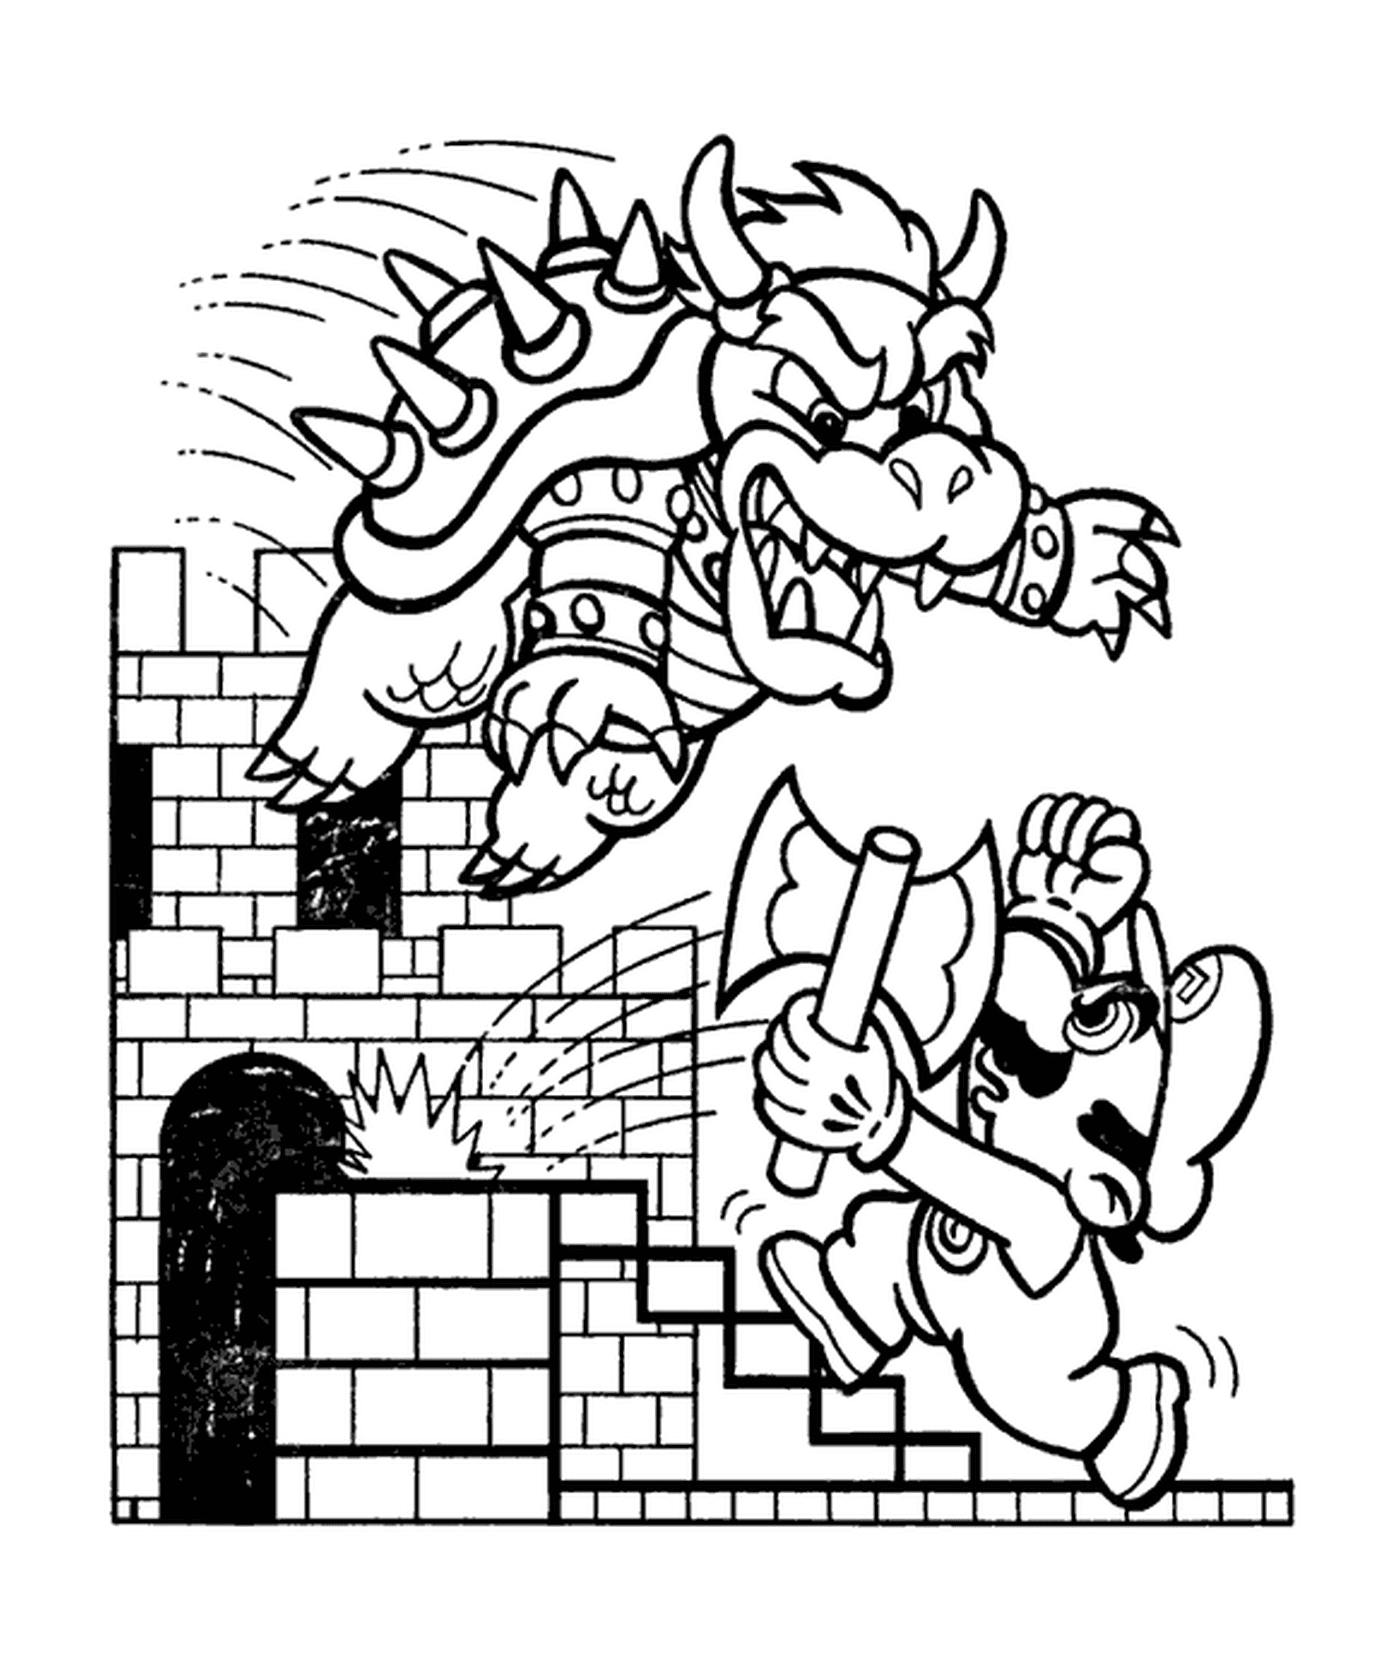  Bowser está atacando a Mario 